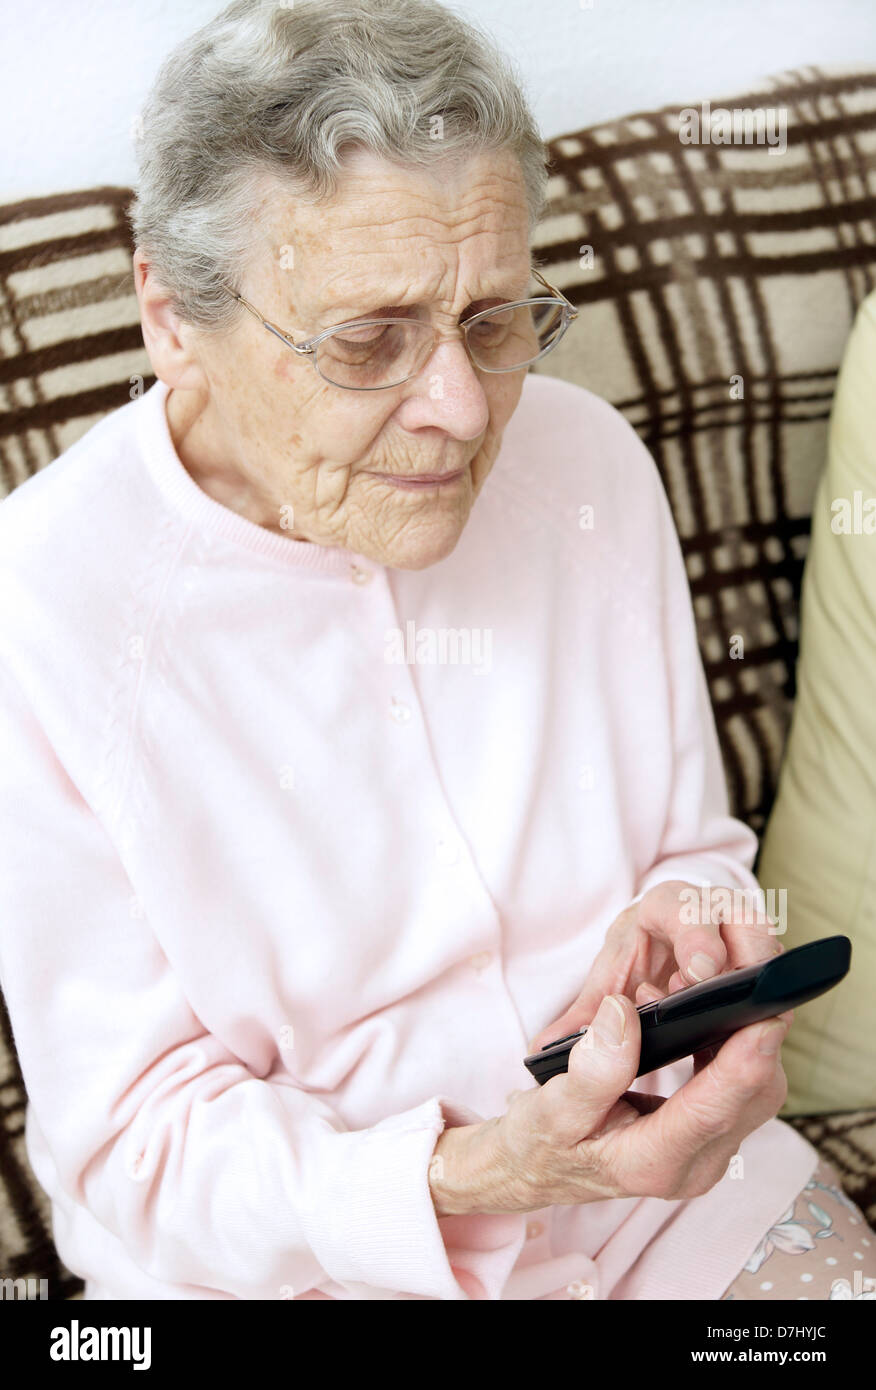 Ältere Frau mit einem spezialisierten großen Knopf Telefon telefonieren die 111 nicht Notfall medizinische Beratung Hotline wegen Krankheitsgefühl Stockfoto